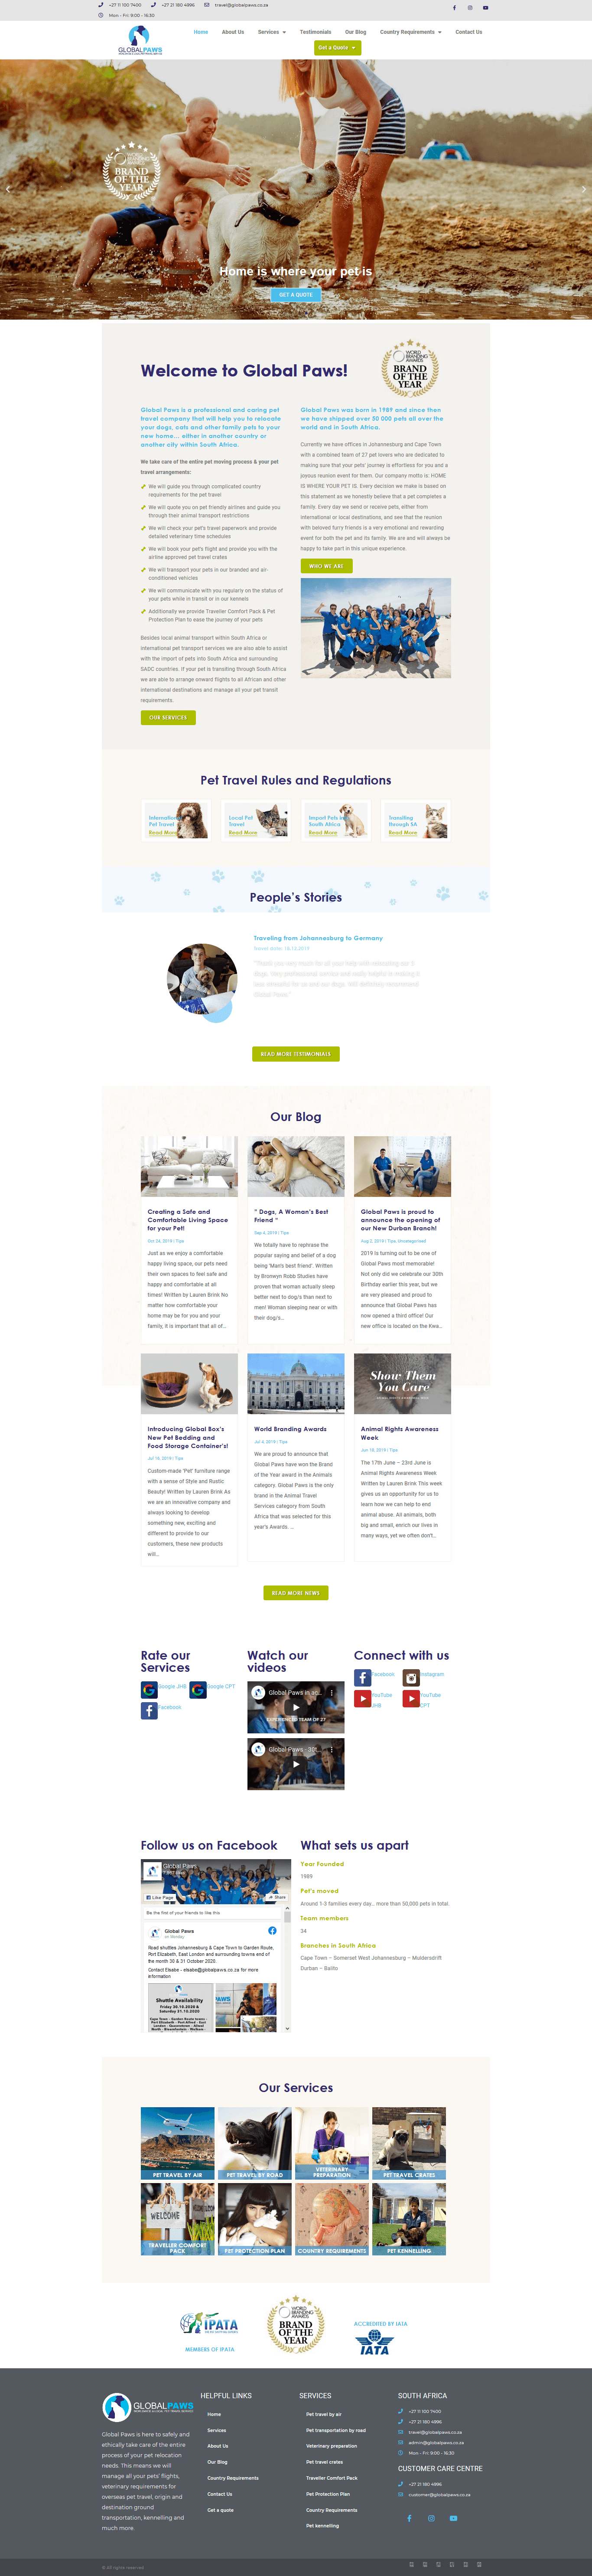 Pet care website design project